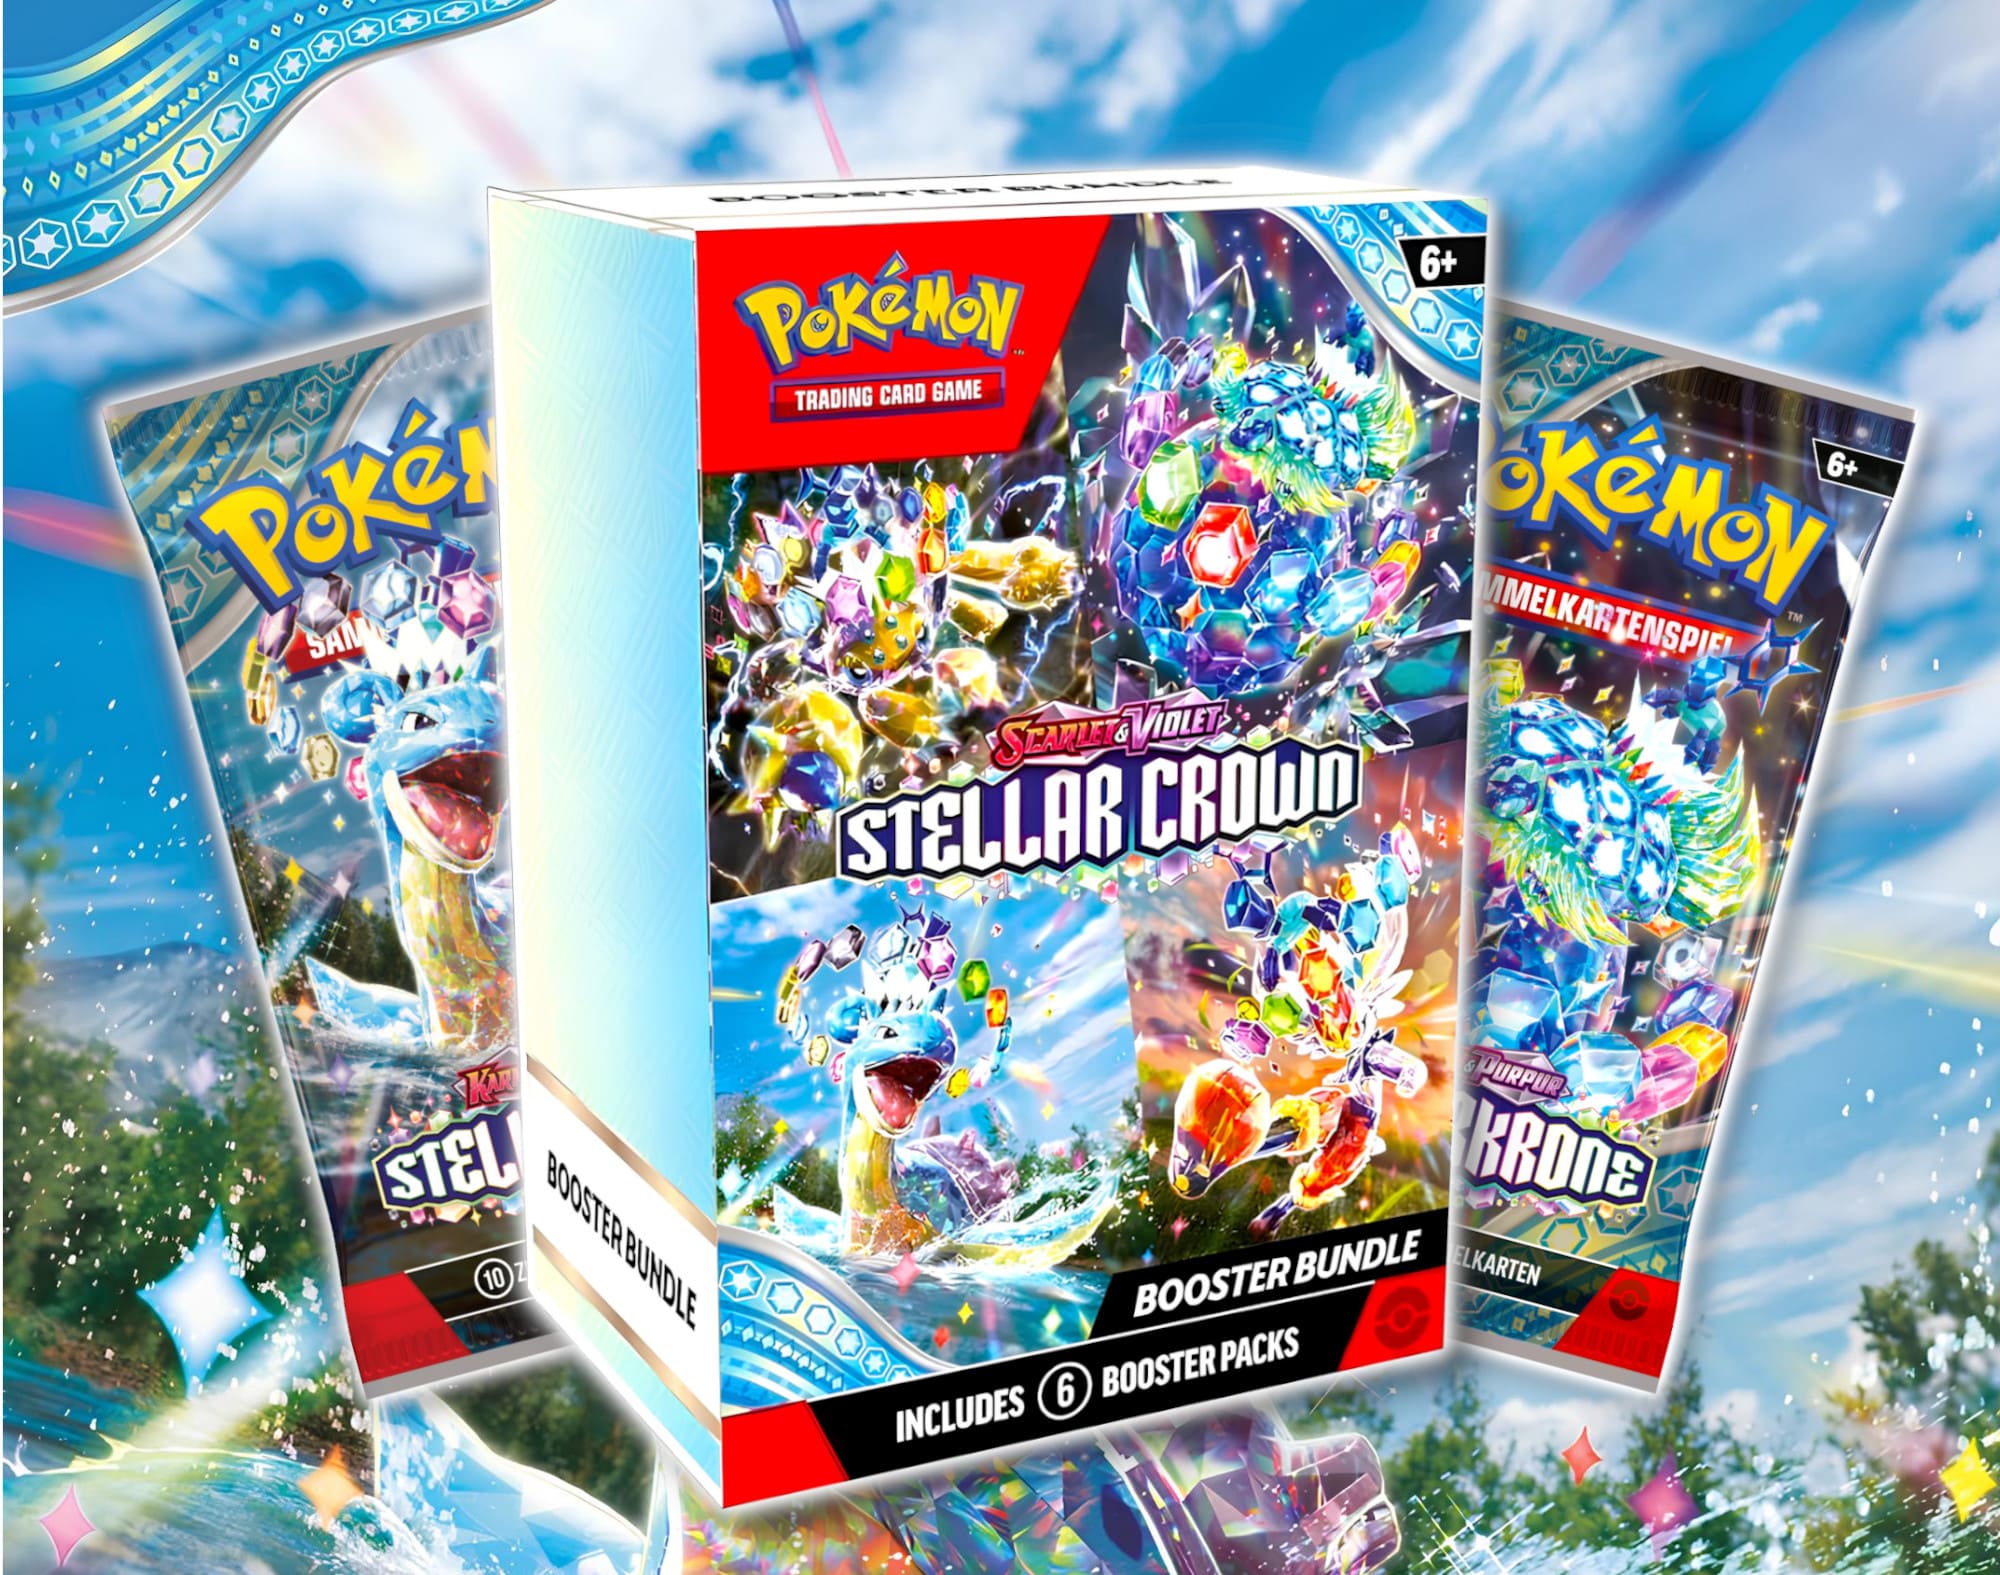 Pokémon-Karmesin-Purpur-Stellarkrone-Stellar-Crown-Set-Erweiterung-Sammelkartenspiel-TCG